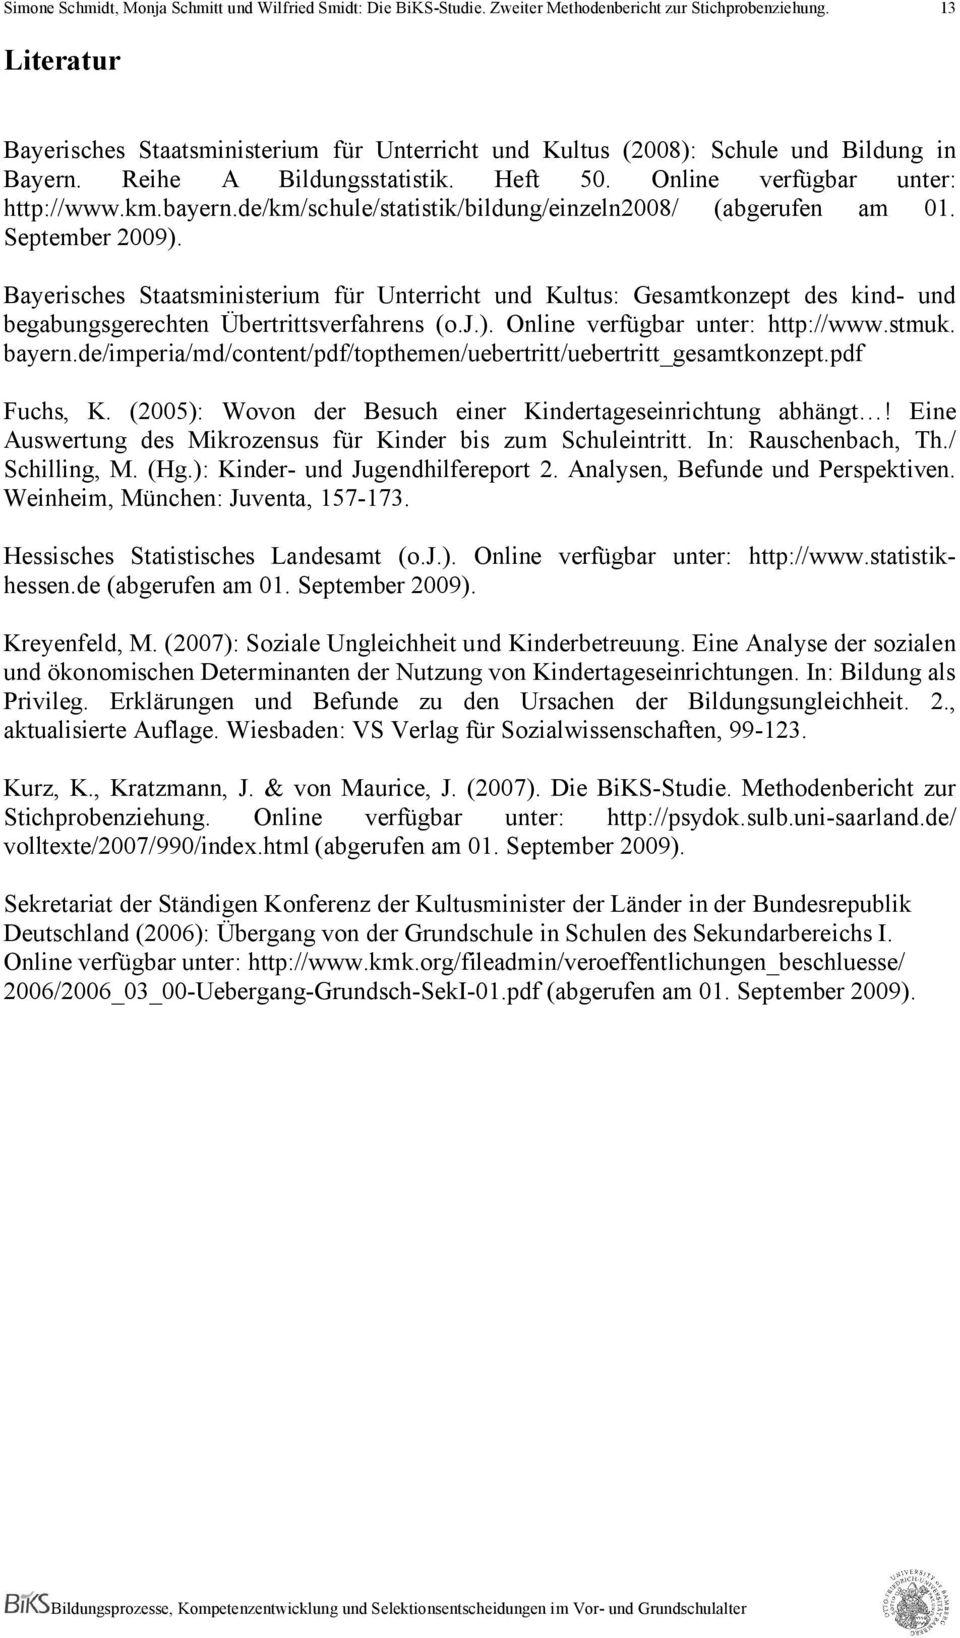 Bayerisches Staatsministerium für Unterricht und Kultus: Gesamtkonzept des kind- und begabungsgerechten Übertrittsverfahrens (o.j.). Online verfügbar unter: http://www.stmuk. bayern.